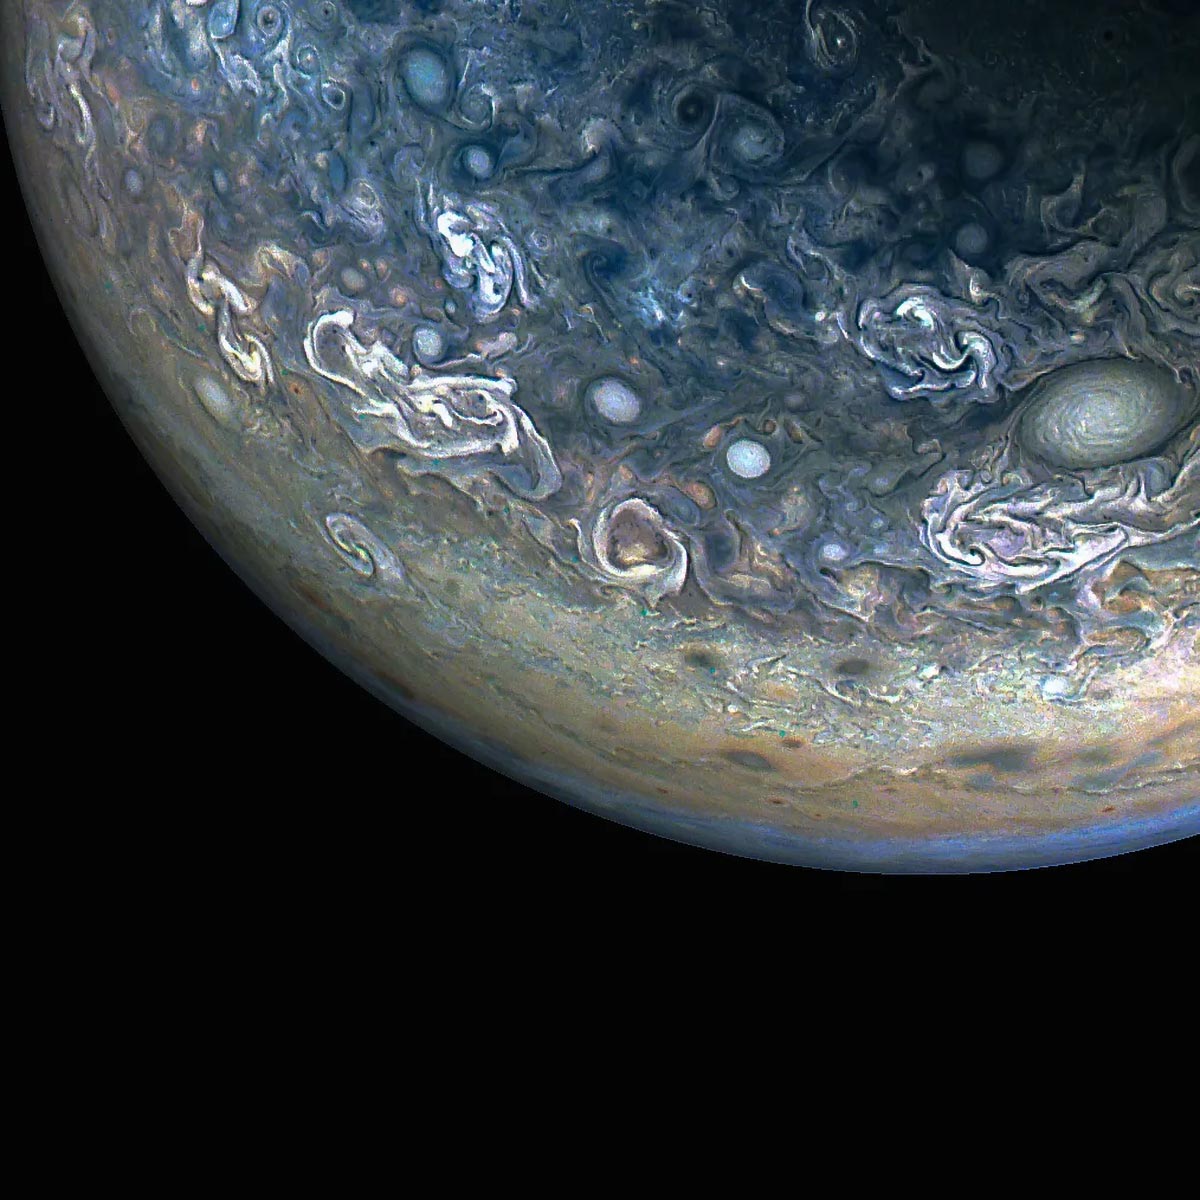 Tàu vũ trụ Juno của NASA ghi lại những hình ảnh tuyệt đẹp về sự hỗn loạn đầy màu sắc của Sao Mộc